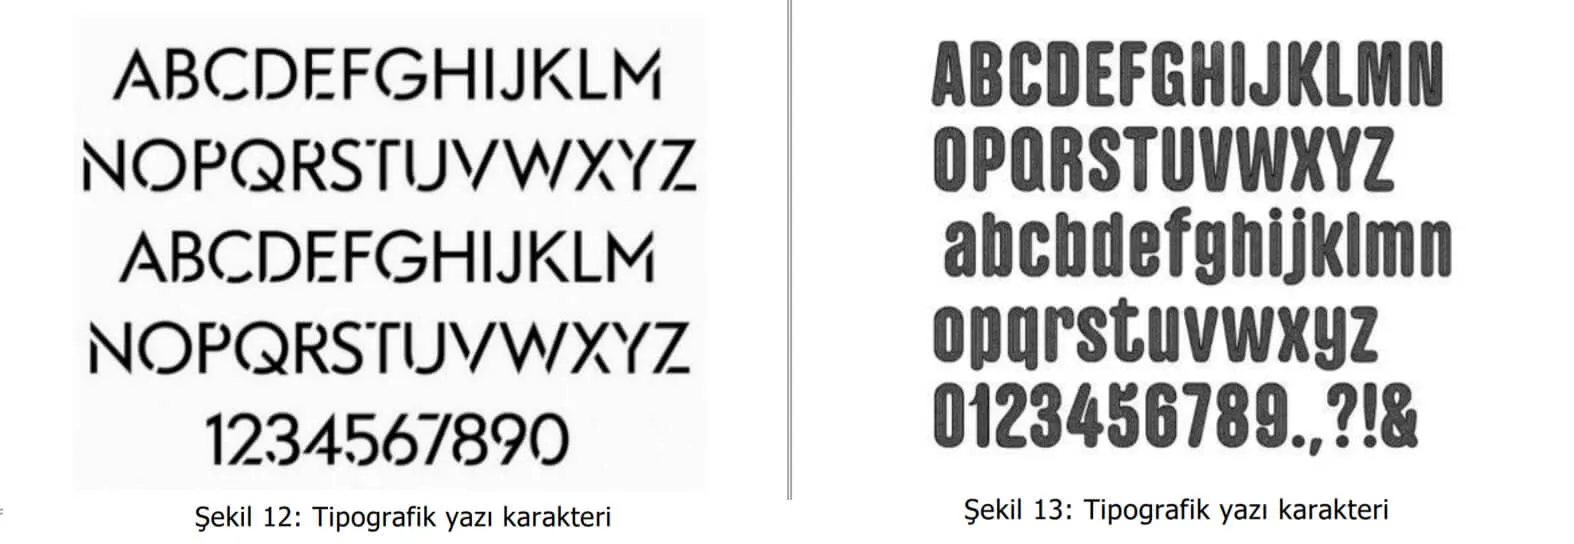 tipografik yazı karakter örnekleri-karşıyaka patent